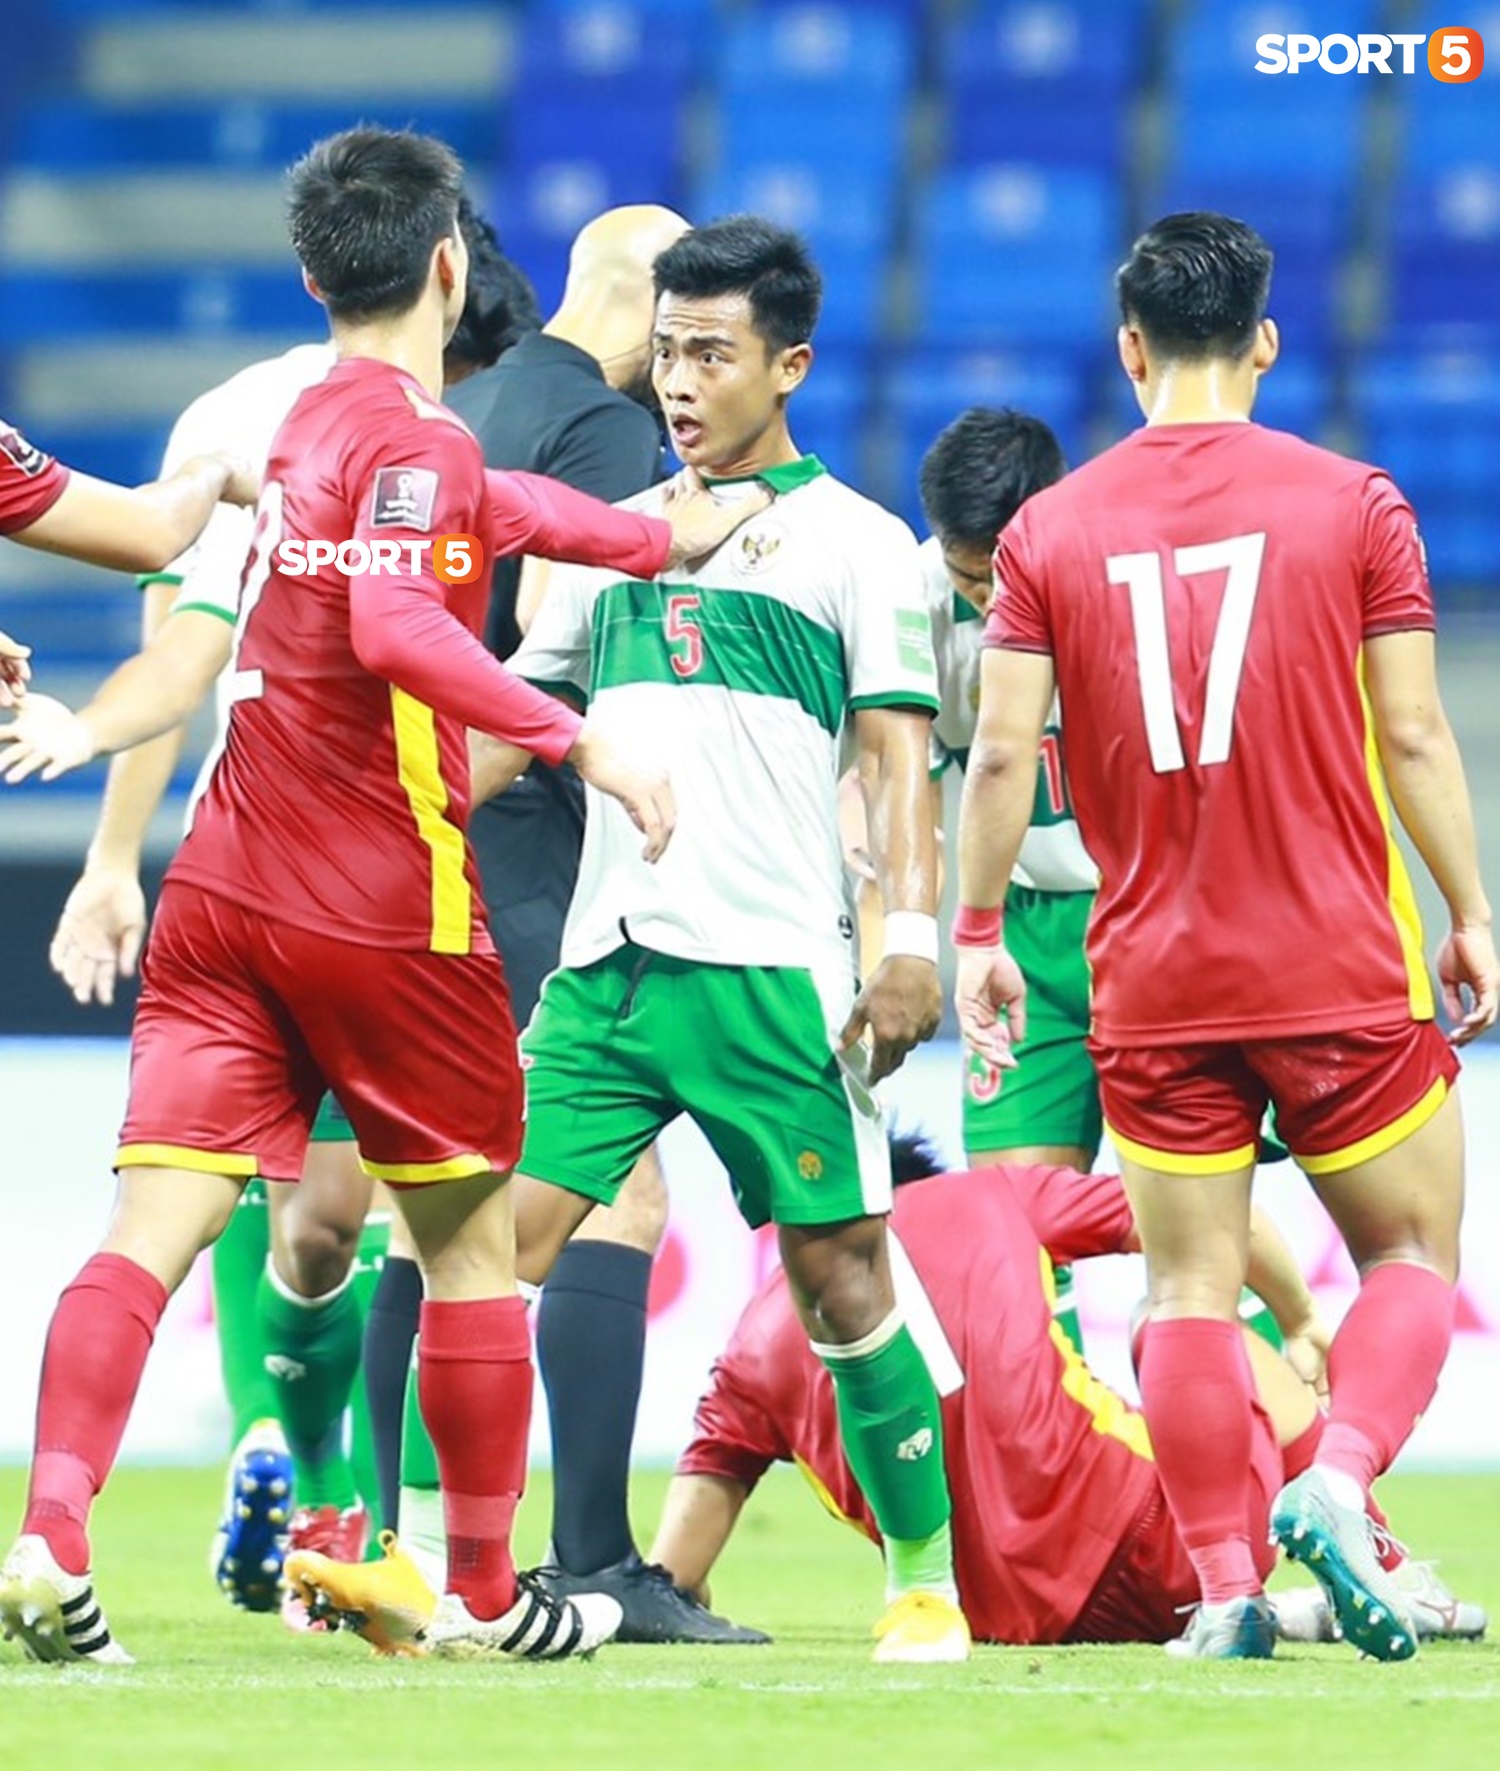 'Vựa muối' Tạ Biên Cương và những câu bình luận bất hủ trong trận đấu của đội tuyển Việt Nam 2